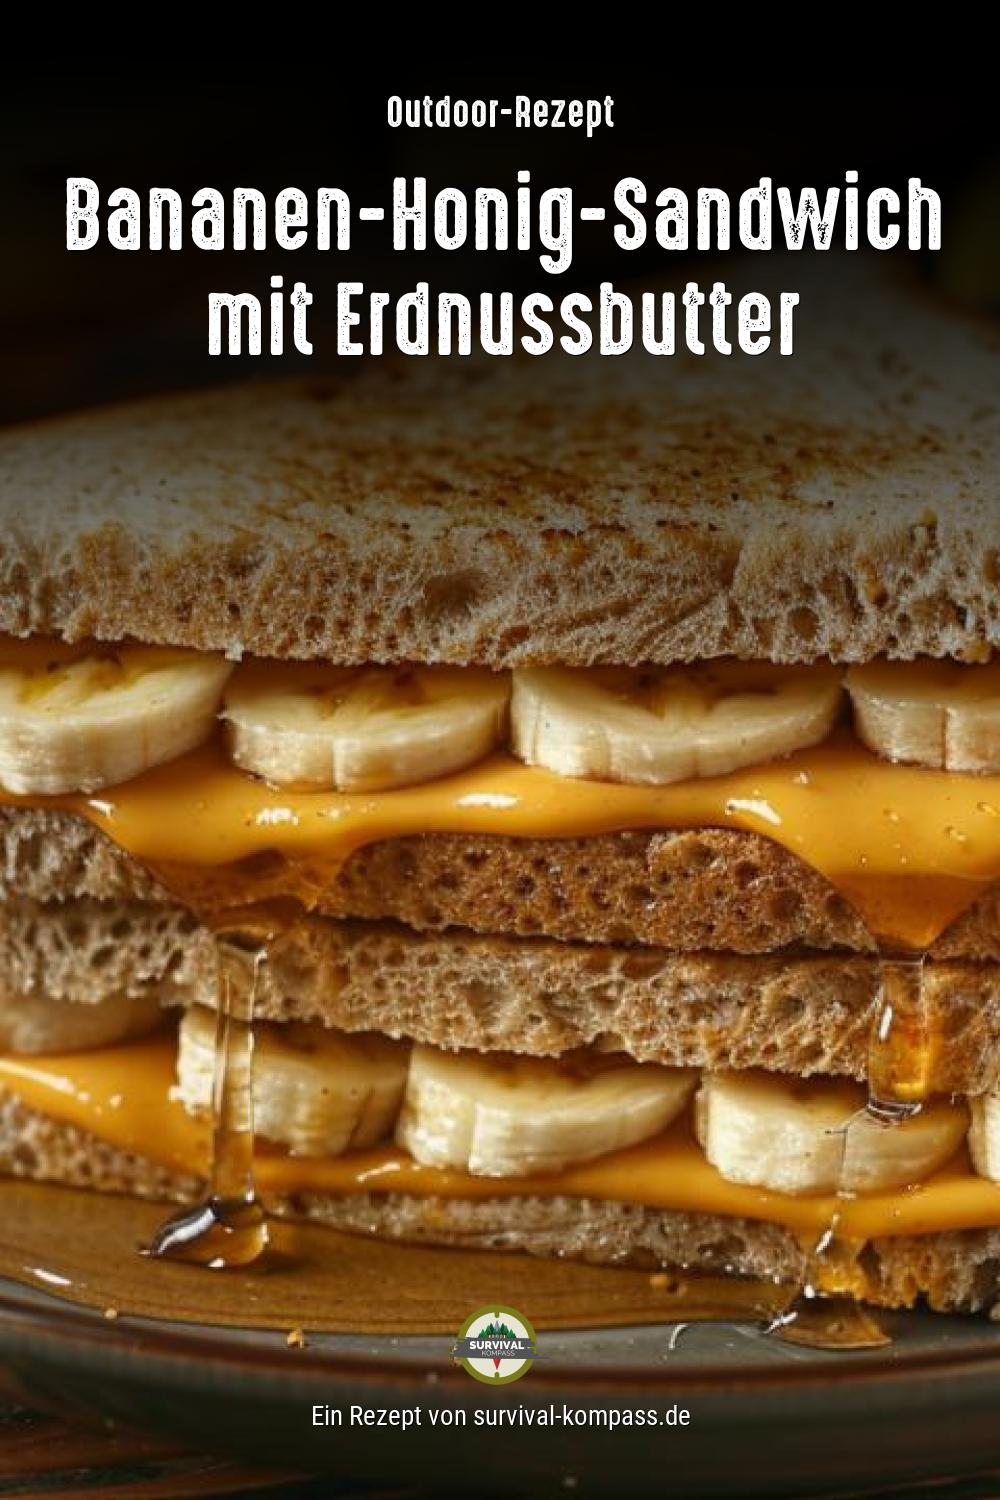 Bananen-Honig-Sandwich mit Erdnussbutter